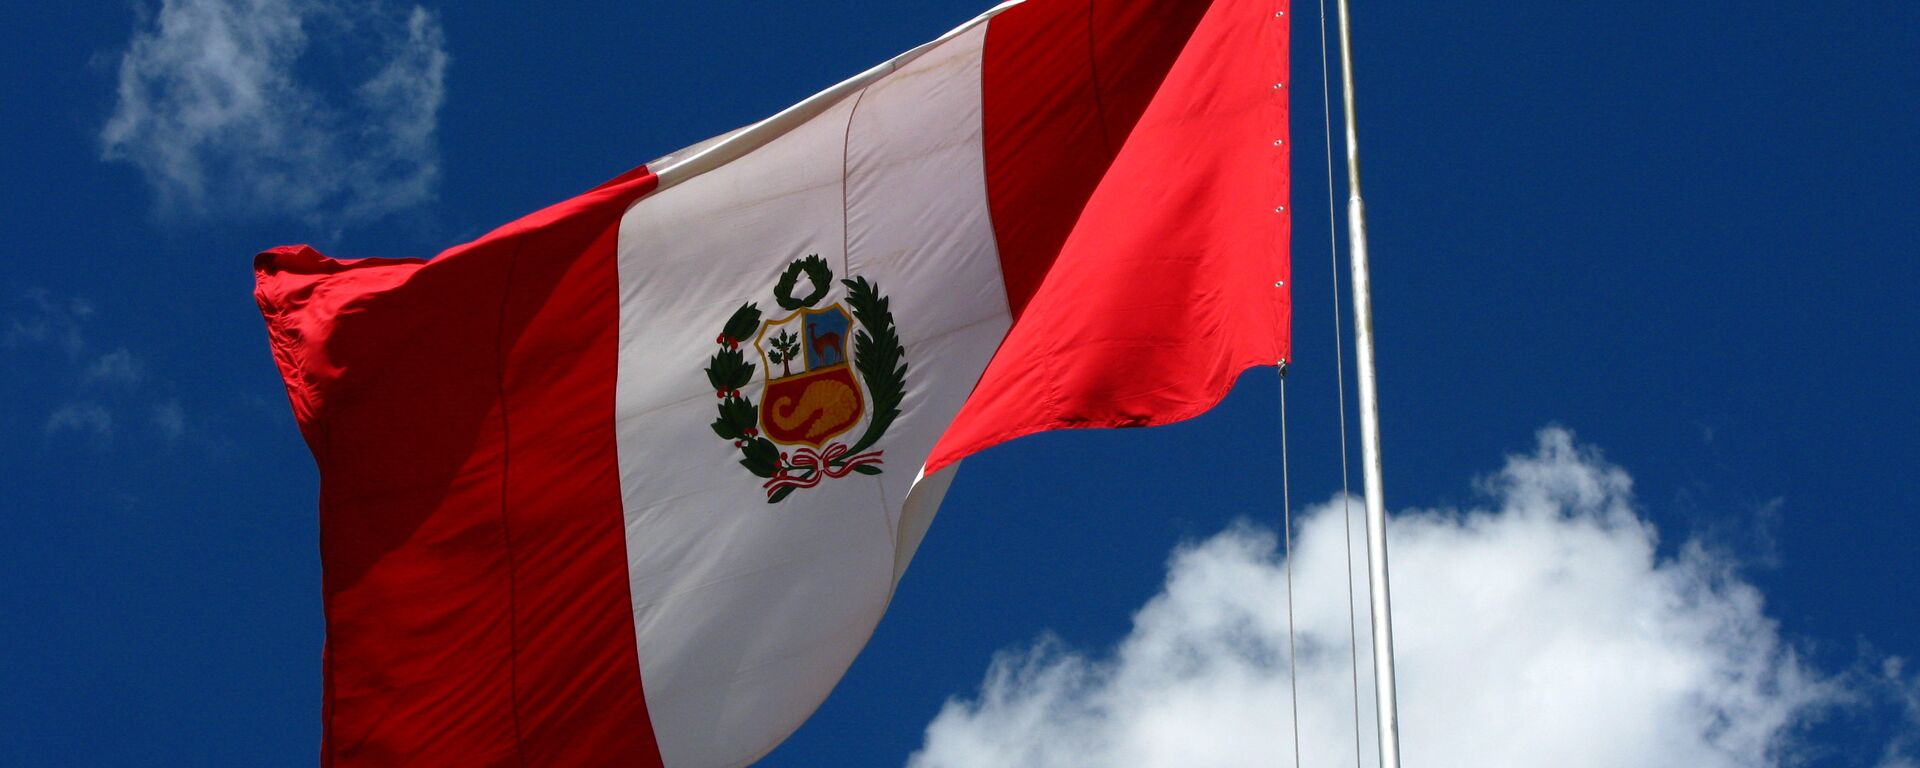 Bandera del Perú - Sputnik Mundo, 1920, 04.06.2021